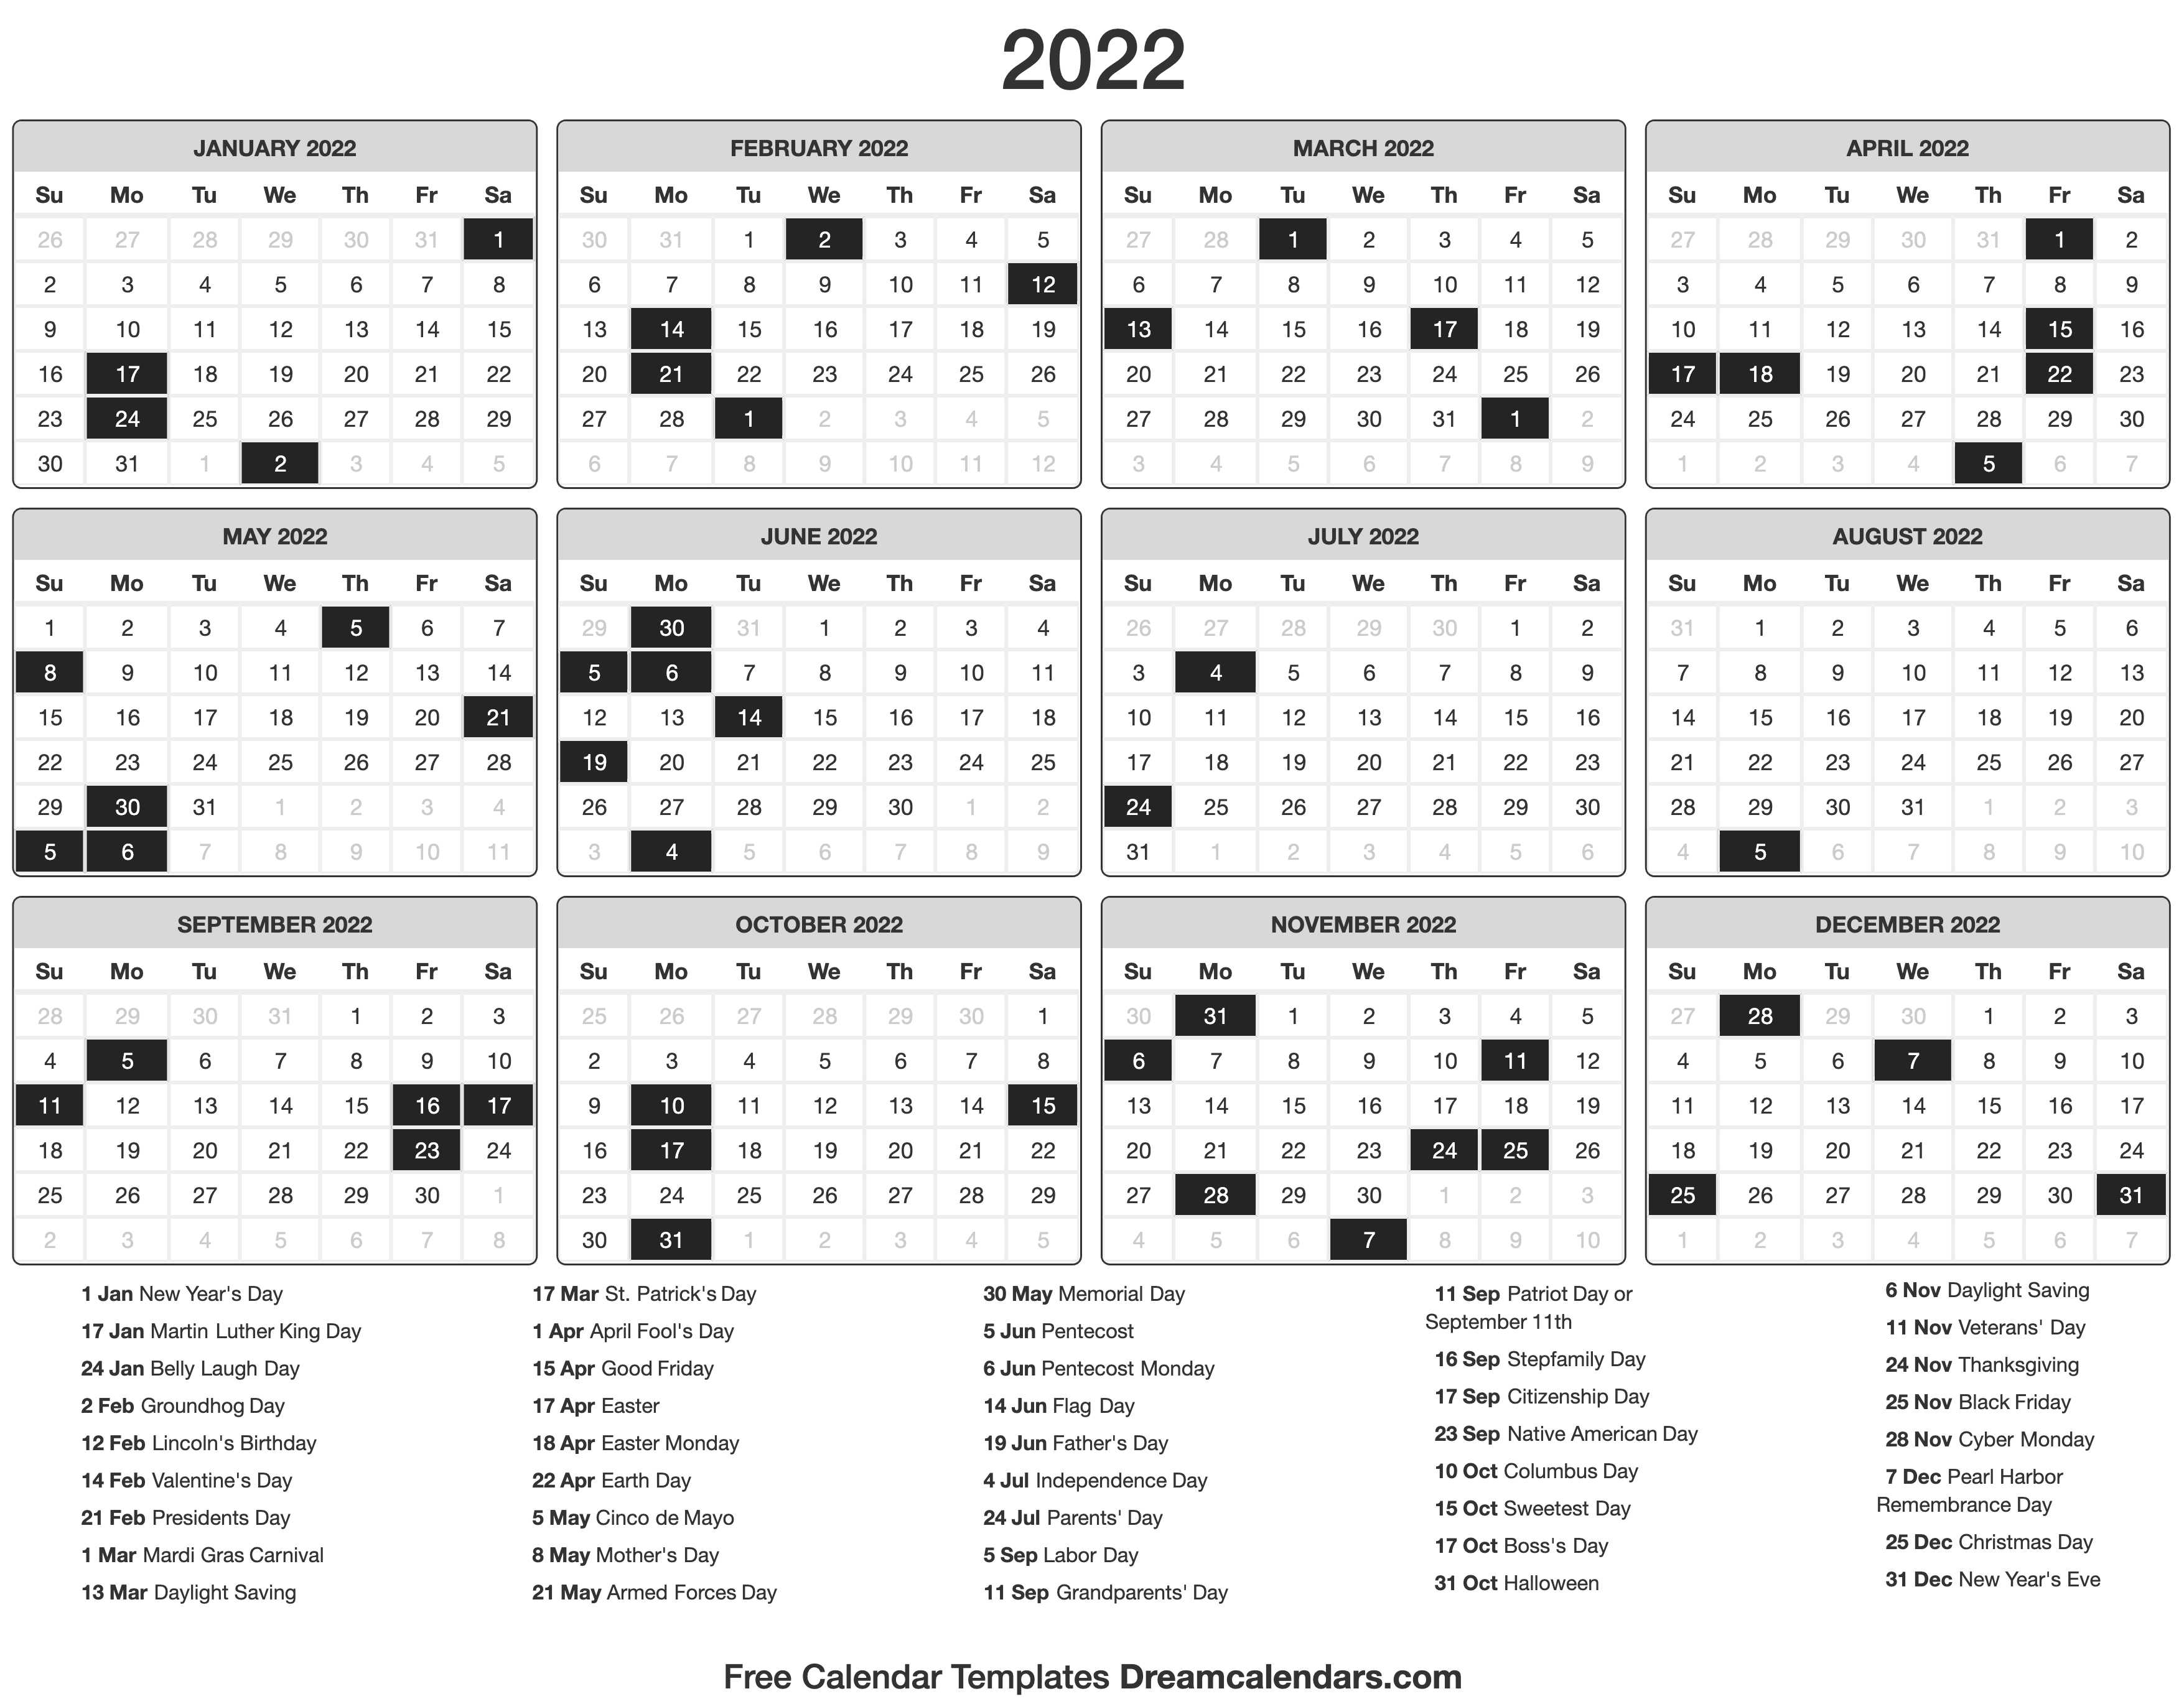 Special Days Calendar 2022 2022 Calendar